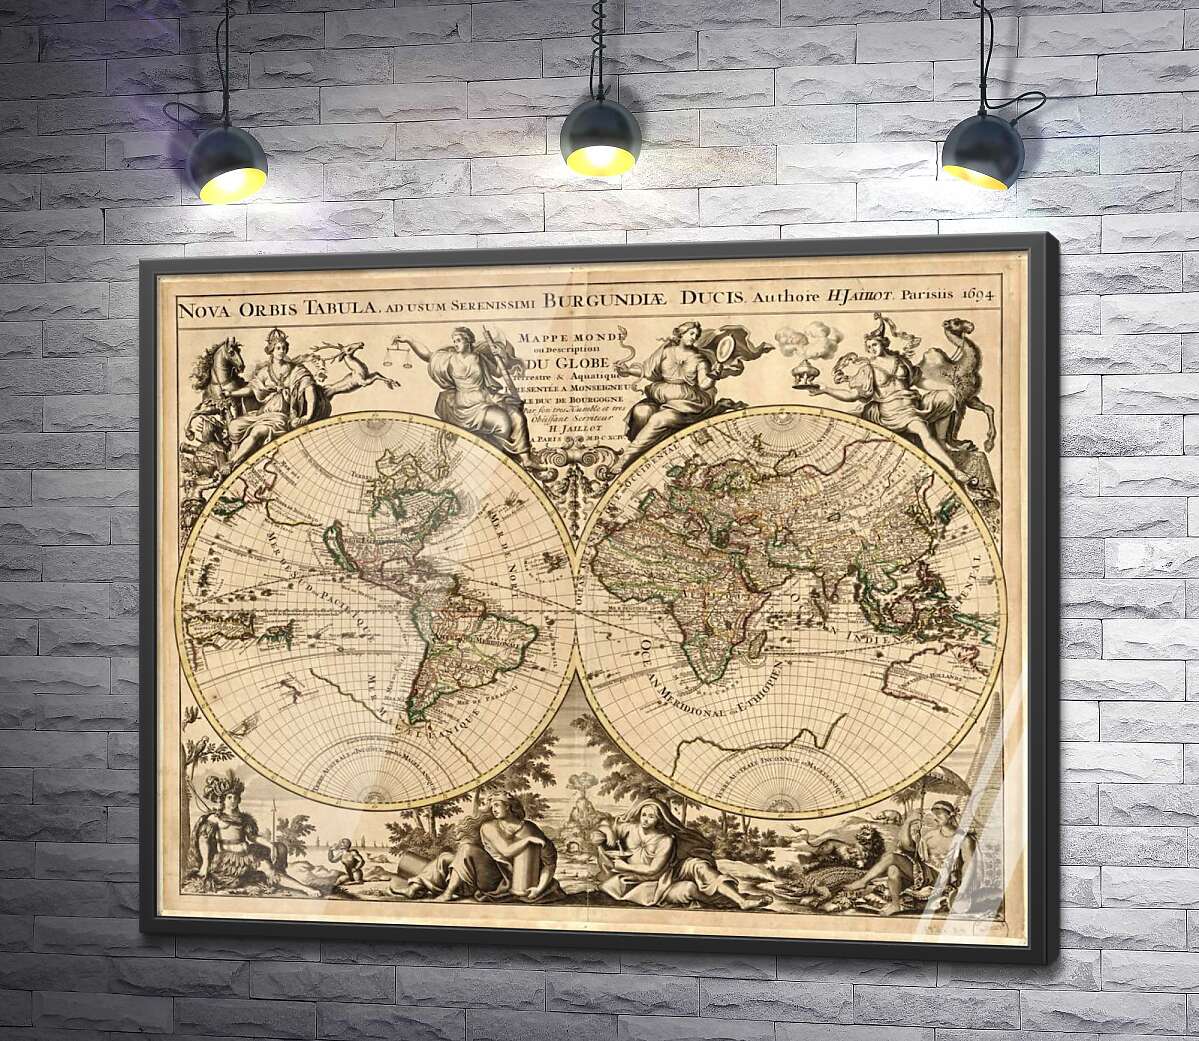 постер Карта полушарий Земли 1694 года, авторства французского картографа Юбера Жайо (Hubert Jaillot)